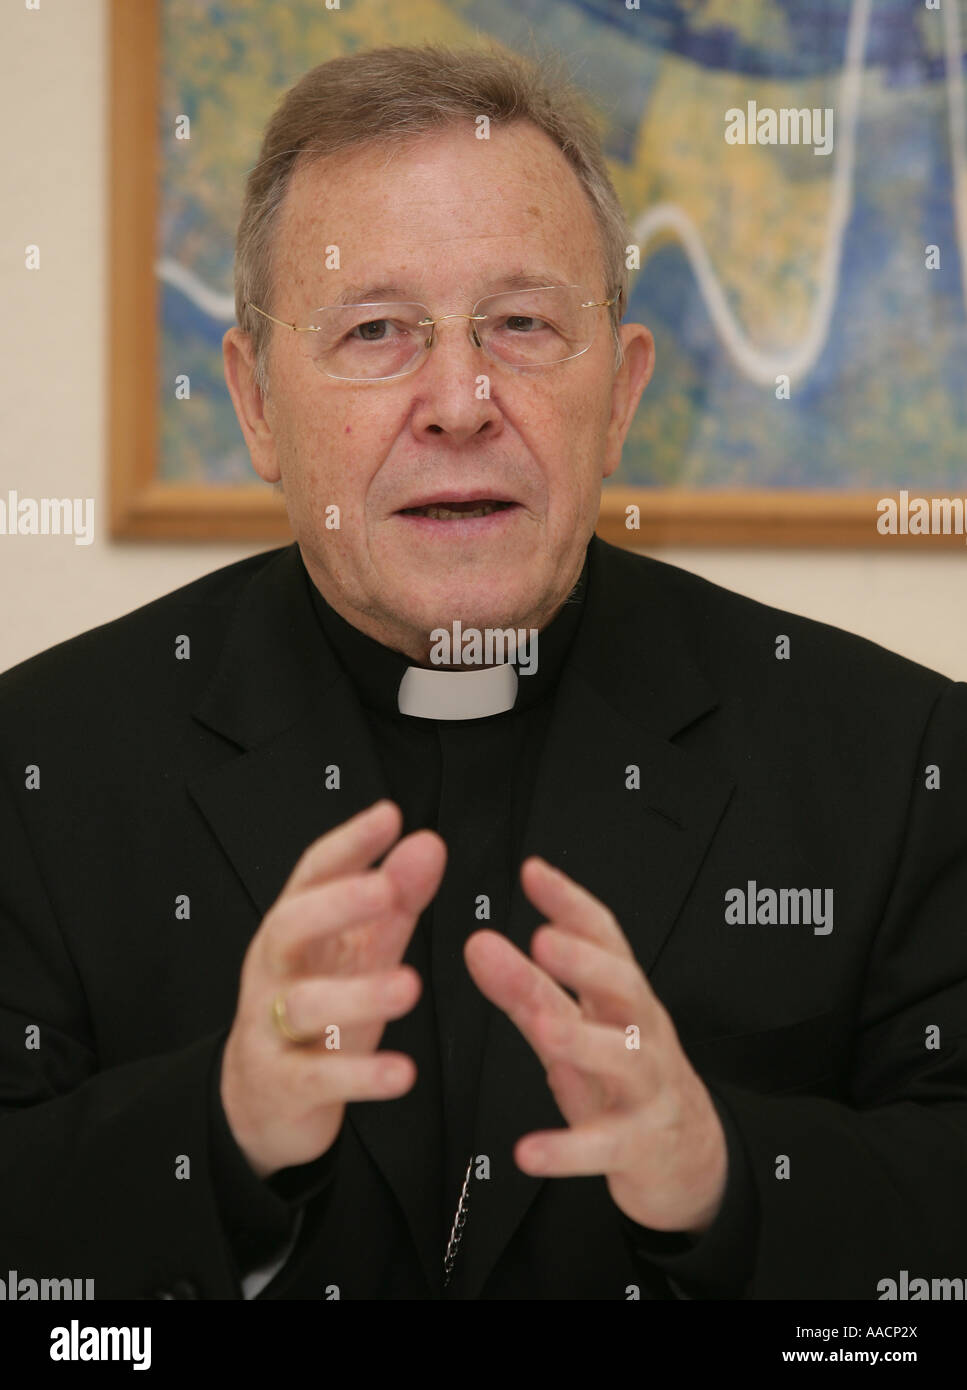 Cardenal Walter Kasper, Presidente de la promoción de la unidad de los Cristianos Foto de stock